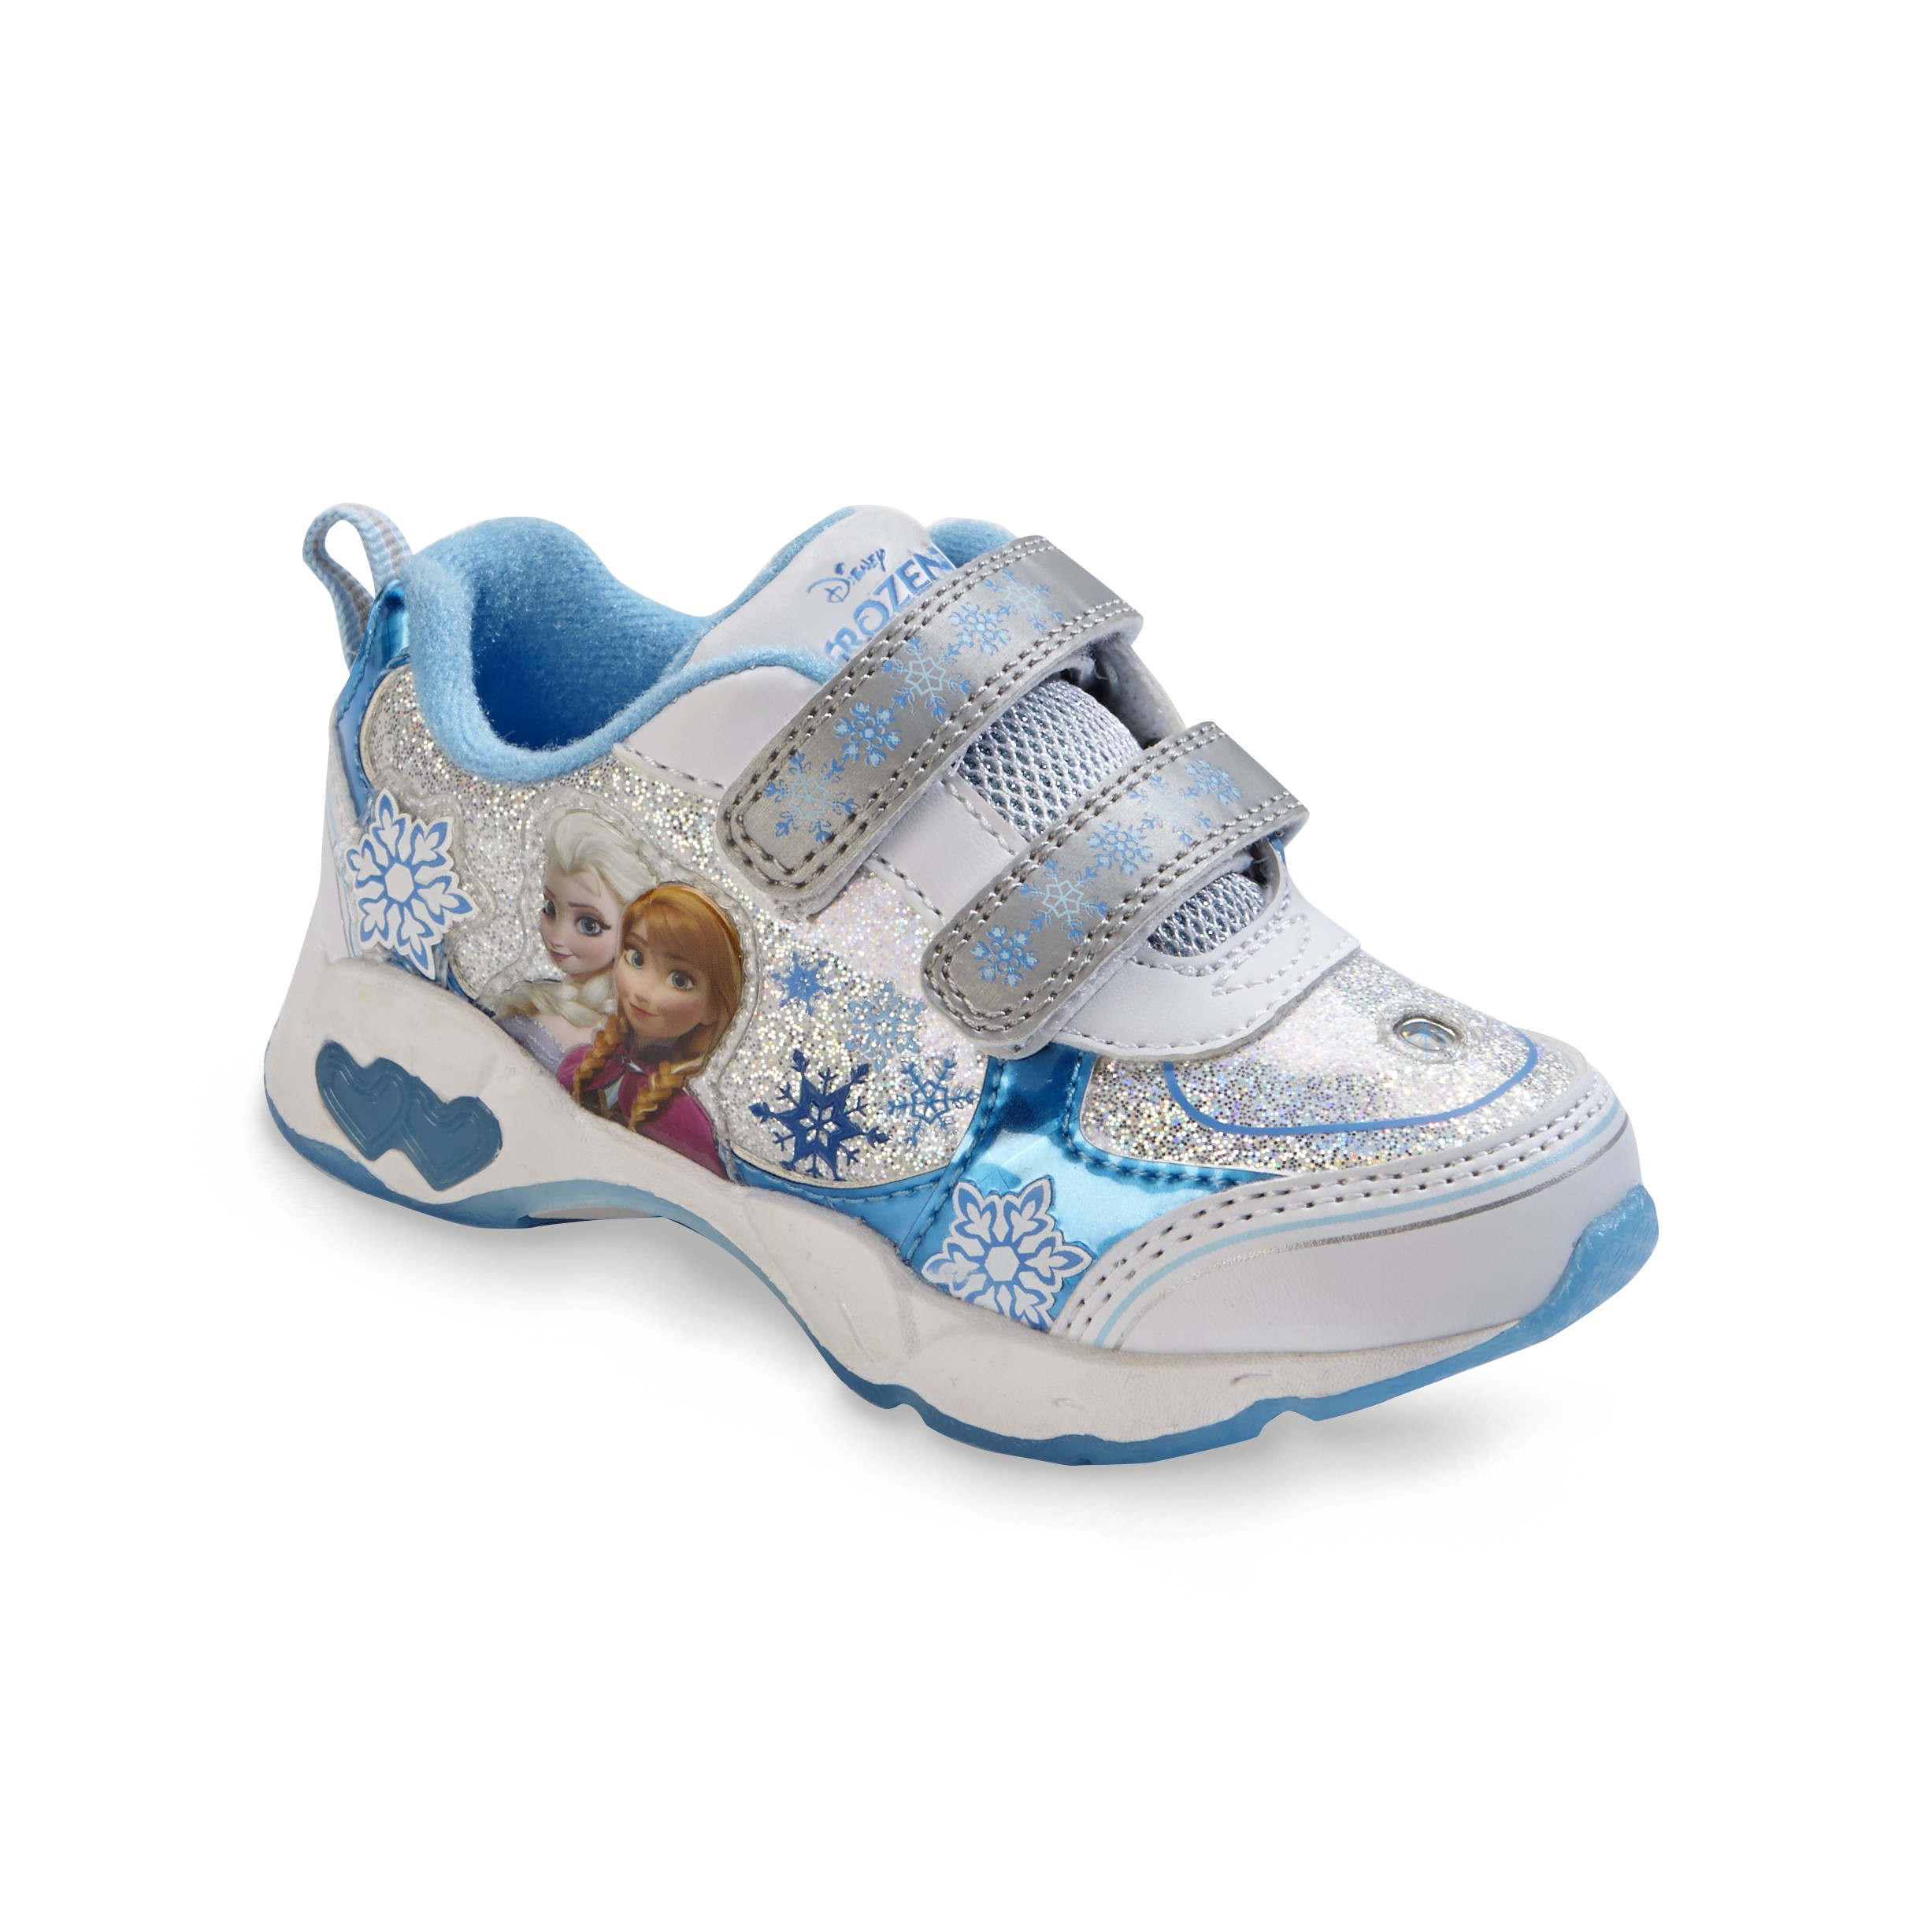 Disney Frozen Toddler Girl's Blue/White LightUp Sneaker